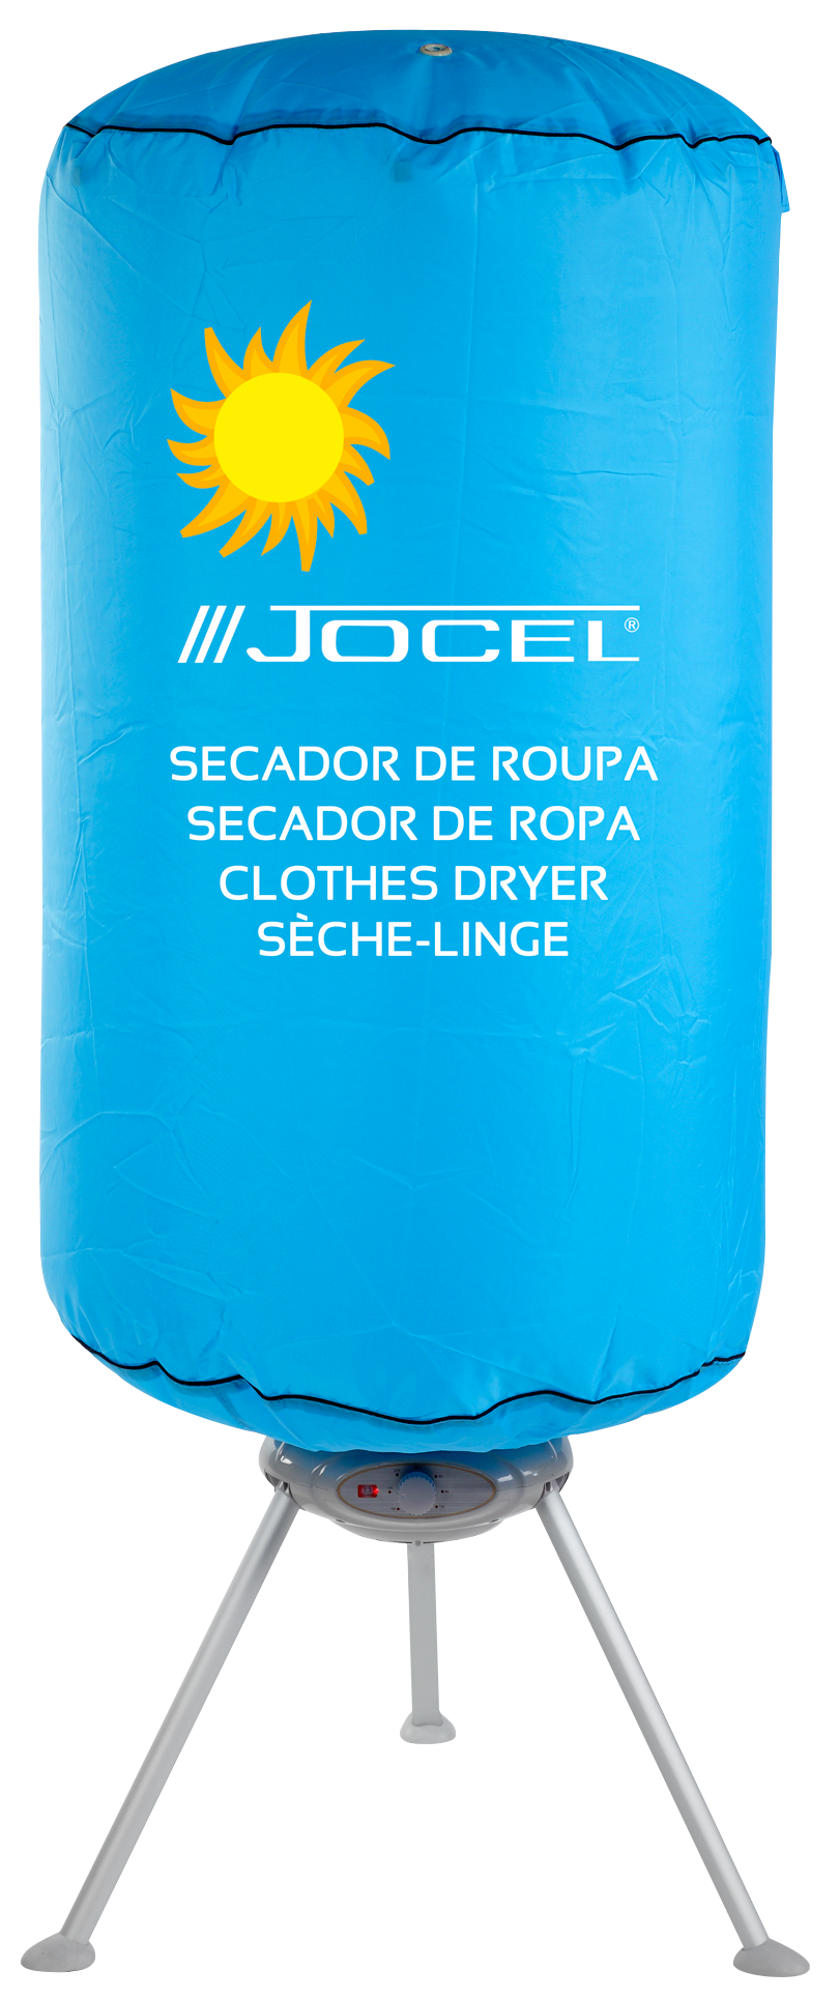 Secadora Aire Jocel jsr002211 capacidad 10kg potencia 1000w de ropa tendedero 10